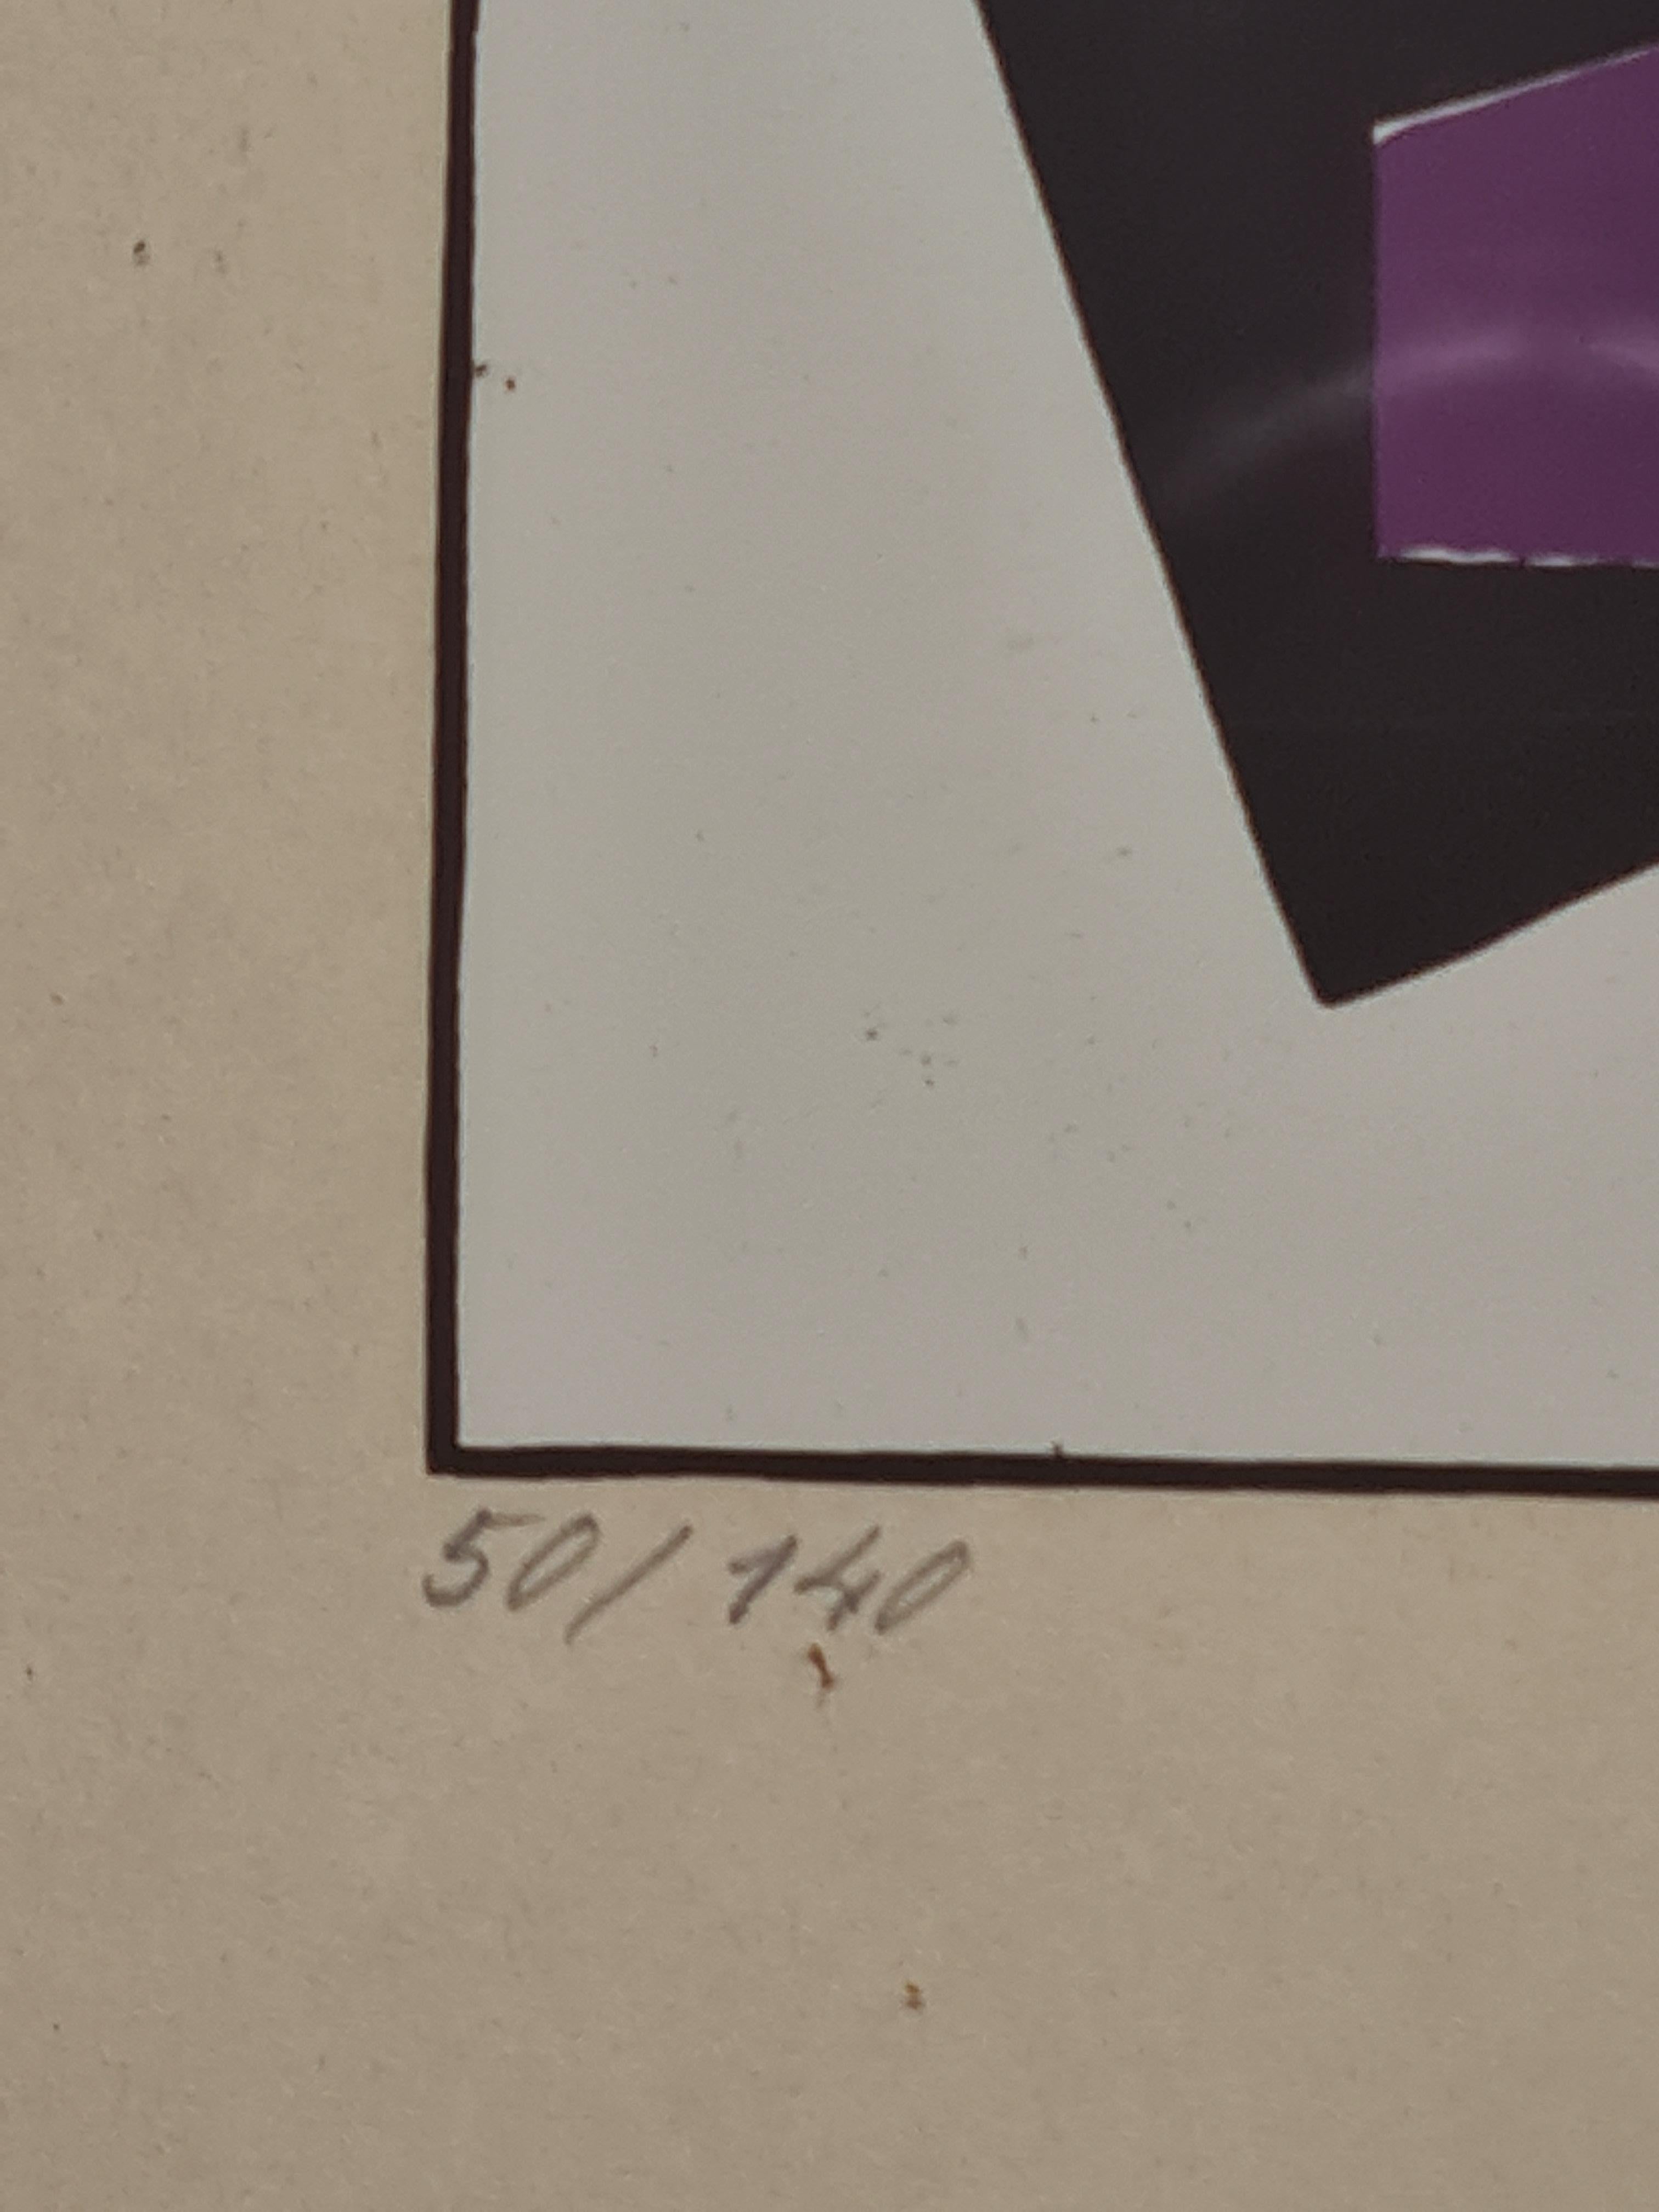 Ein Folioblatt aus dem Album MA von Sándor Bortnyik. Unten rechts mit Bleistift vom Künstler signiert, unten links mit Bleistift nummeriert, Nummer 50 der Auflage von 140. Präsentiert in einem schlichten Holzrahmen unter Glas.

Dieses